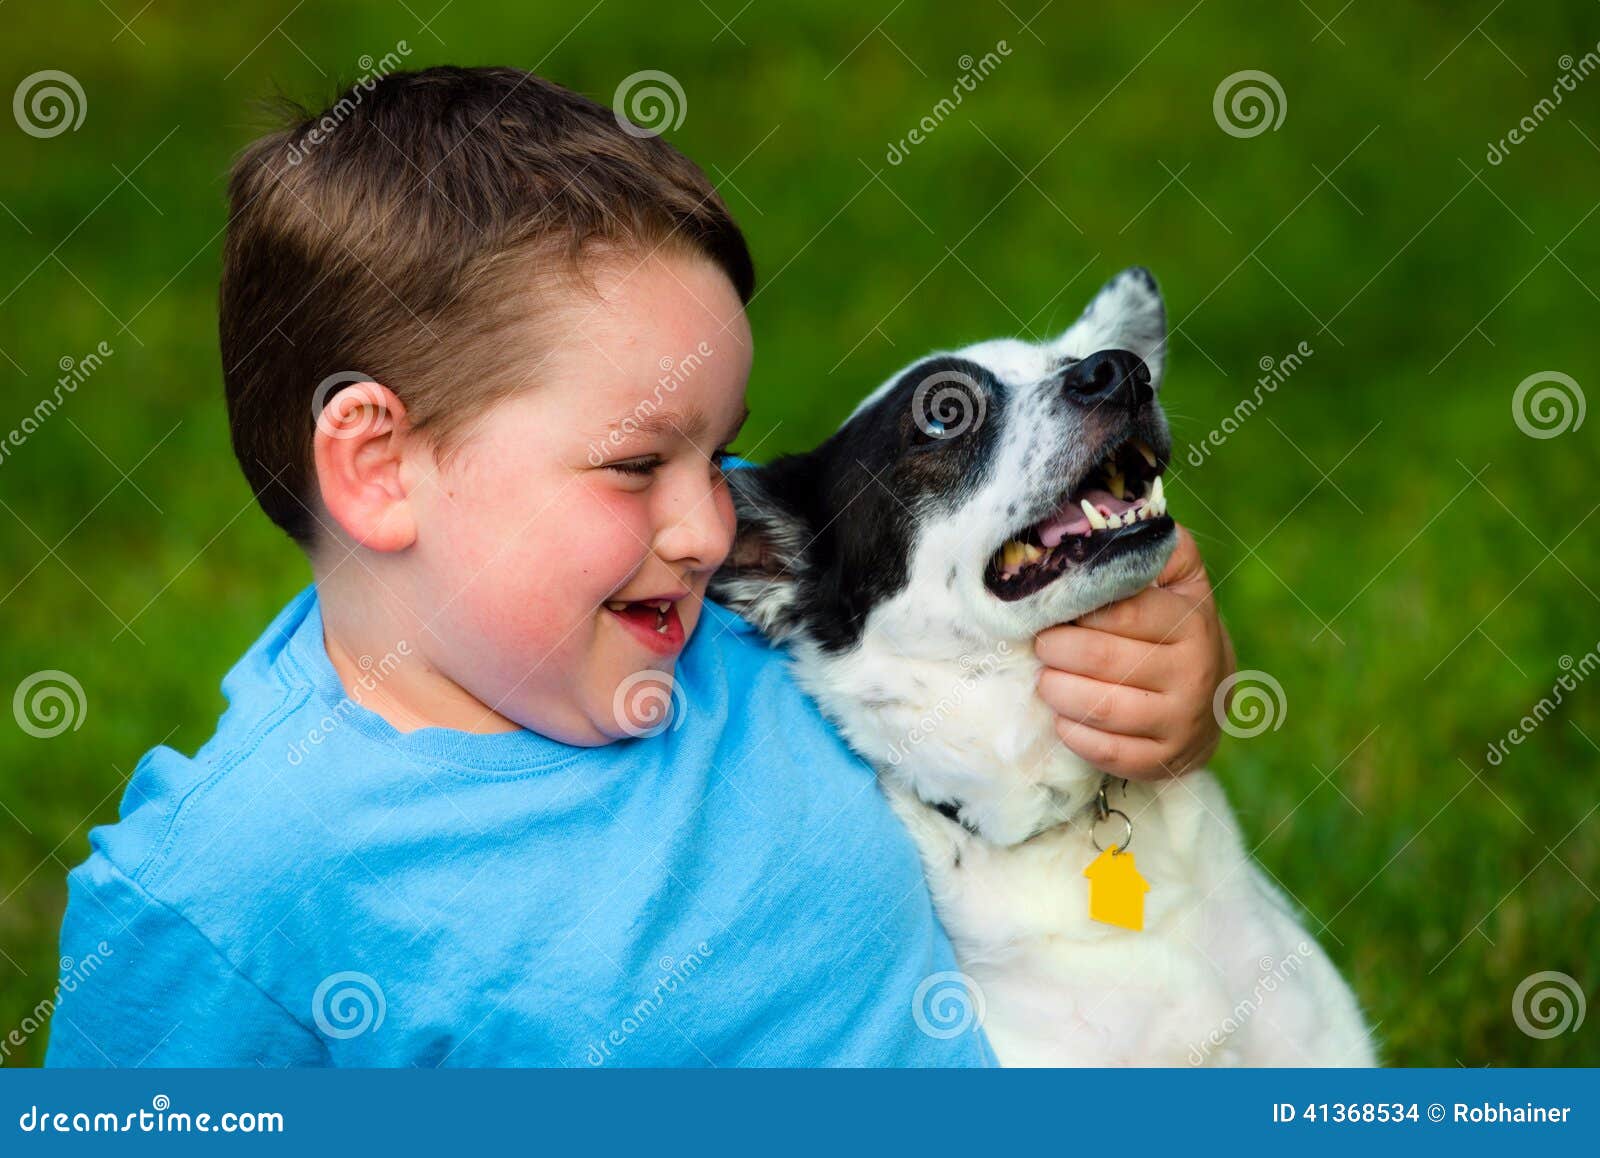 child lovingly embraces his pet